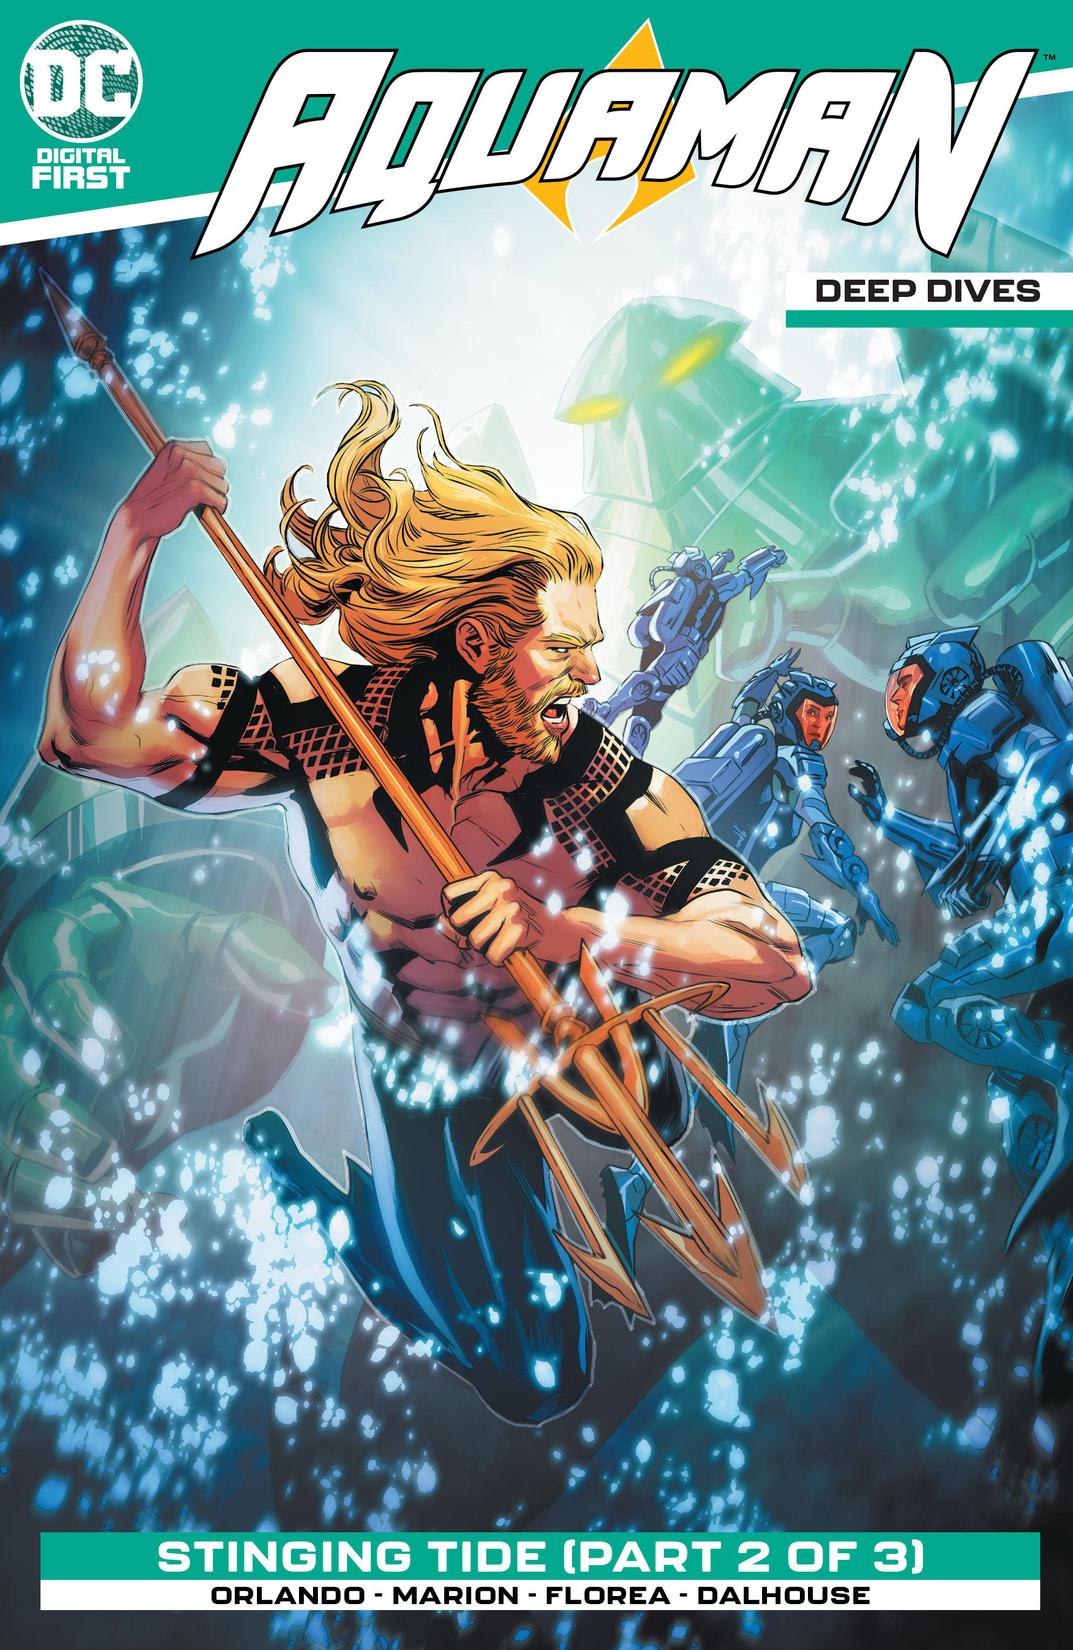 Aquaman: Deep Dives #6 preview images